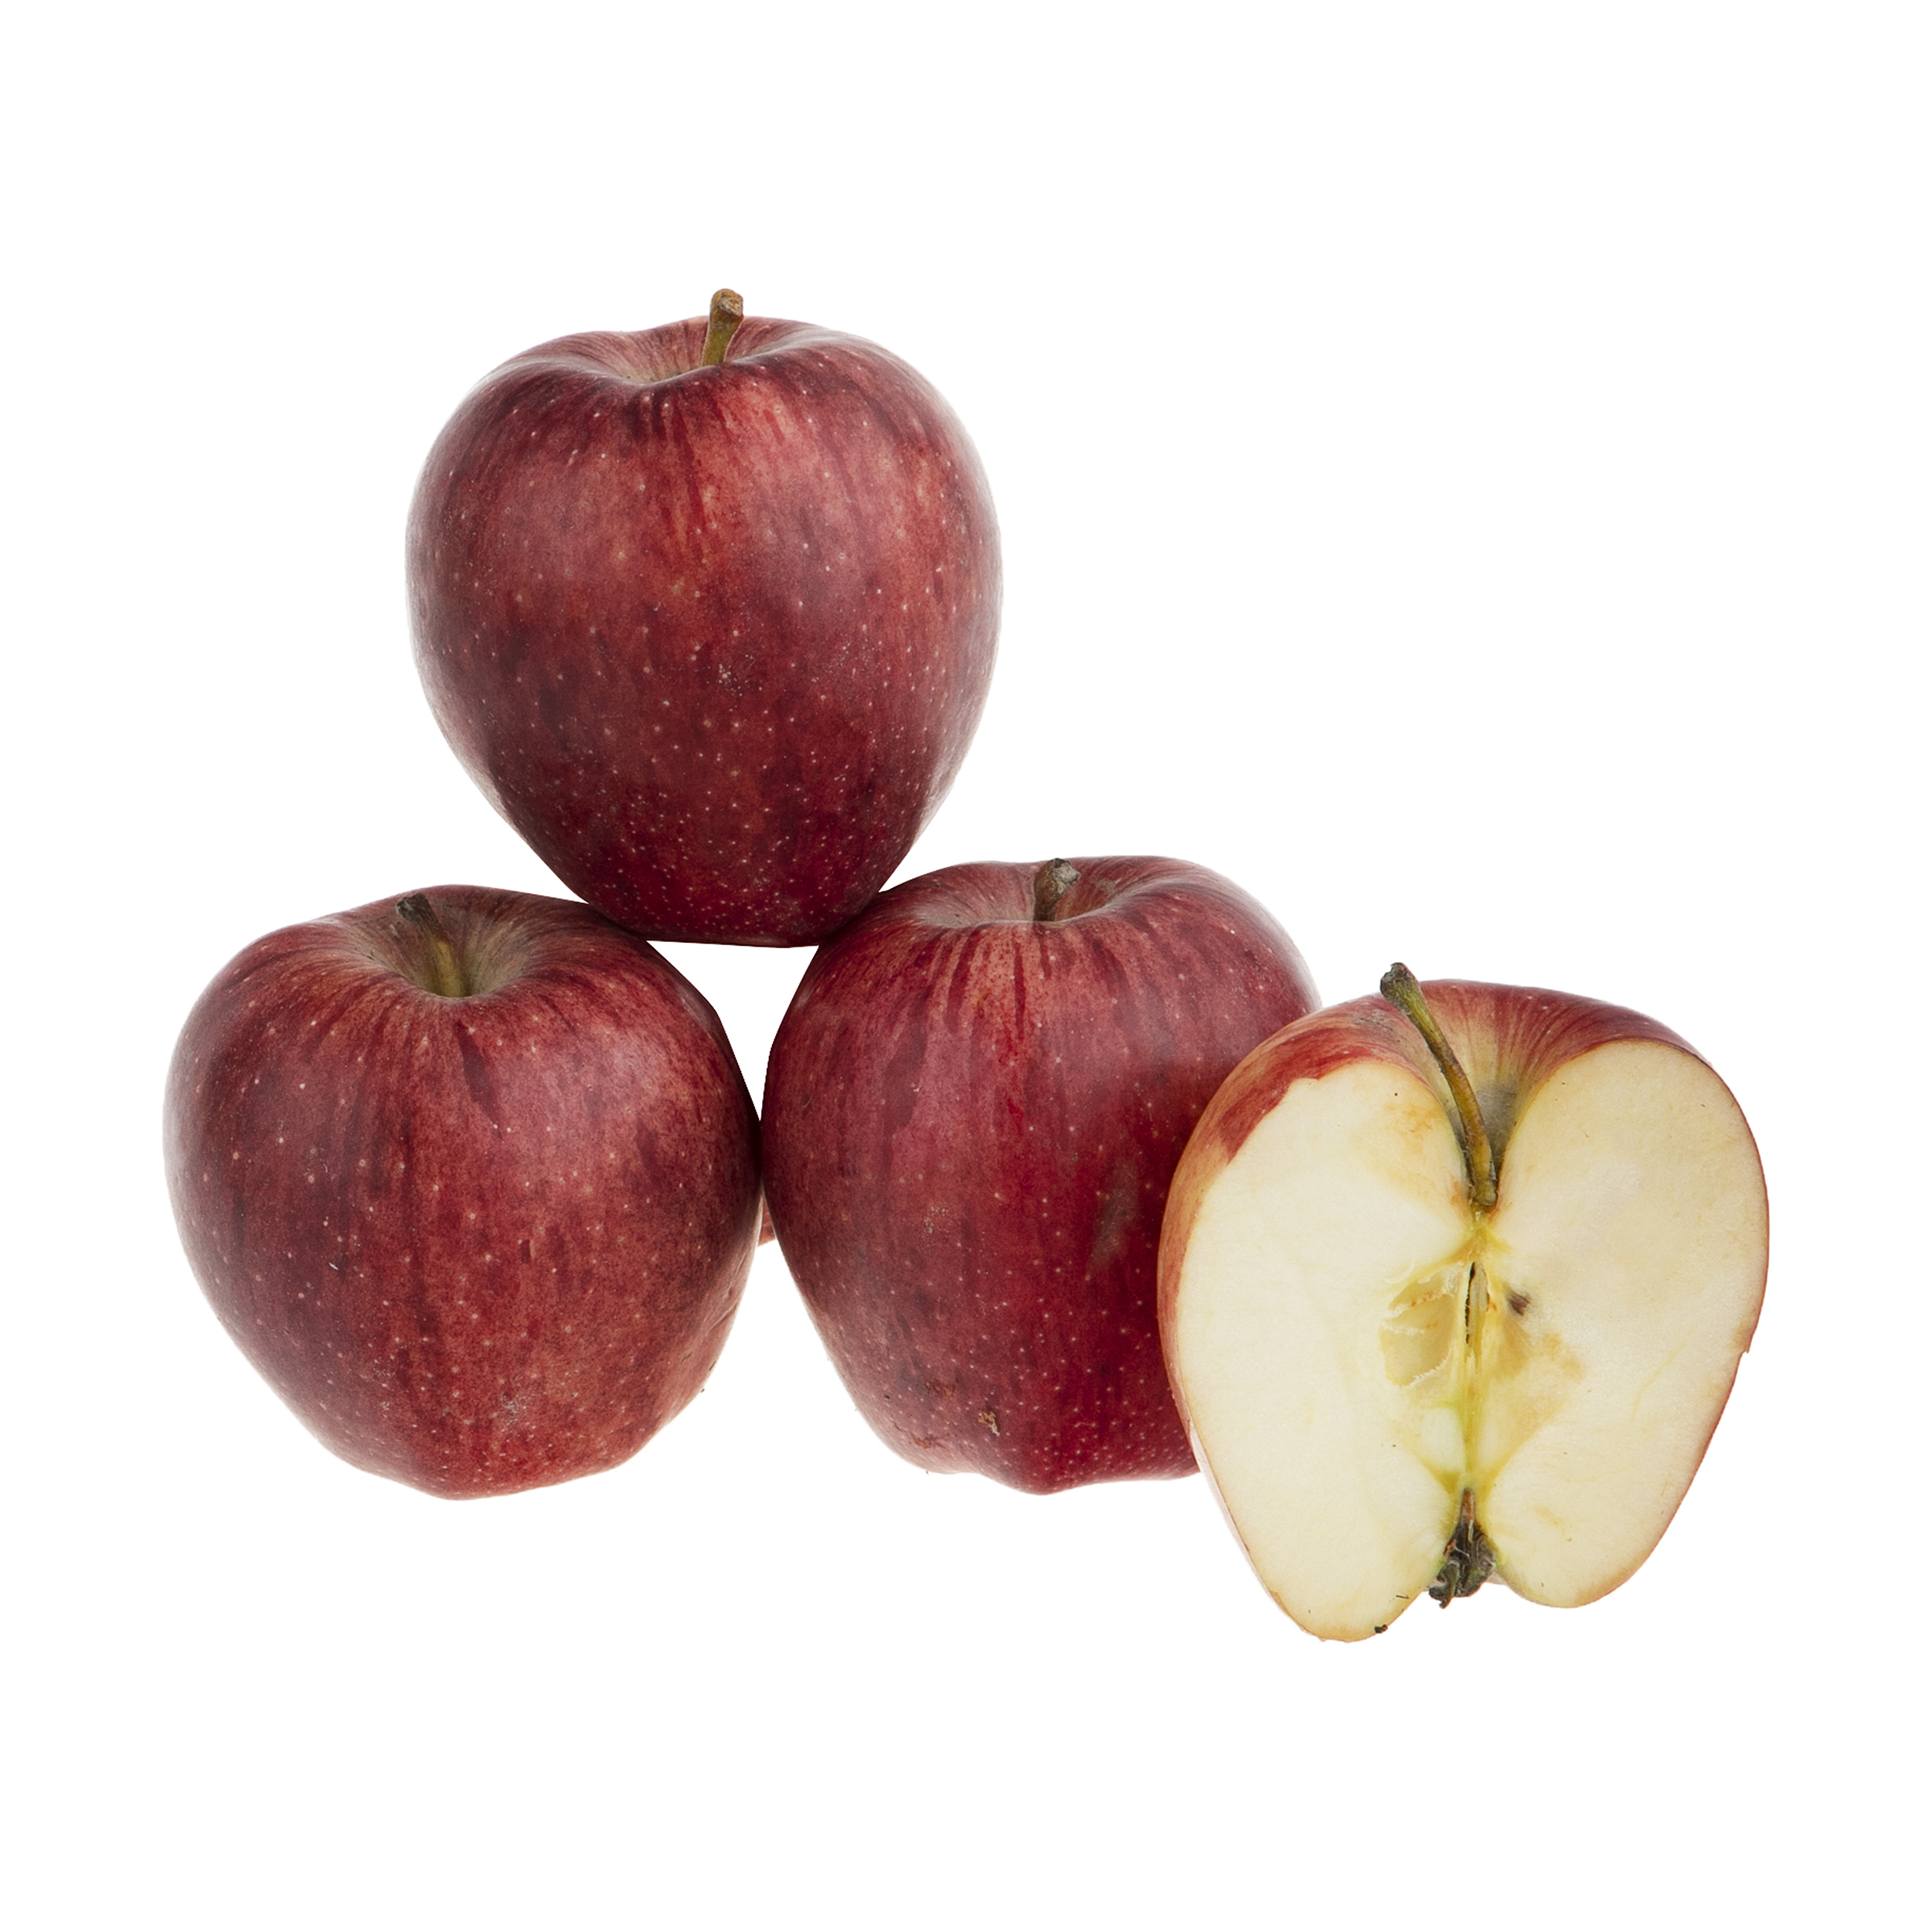 سیب قرمز بلوط - 1 کیلوگرم بسته بندی نایلونی 